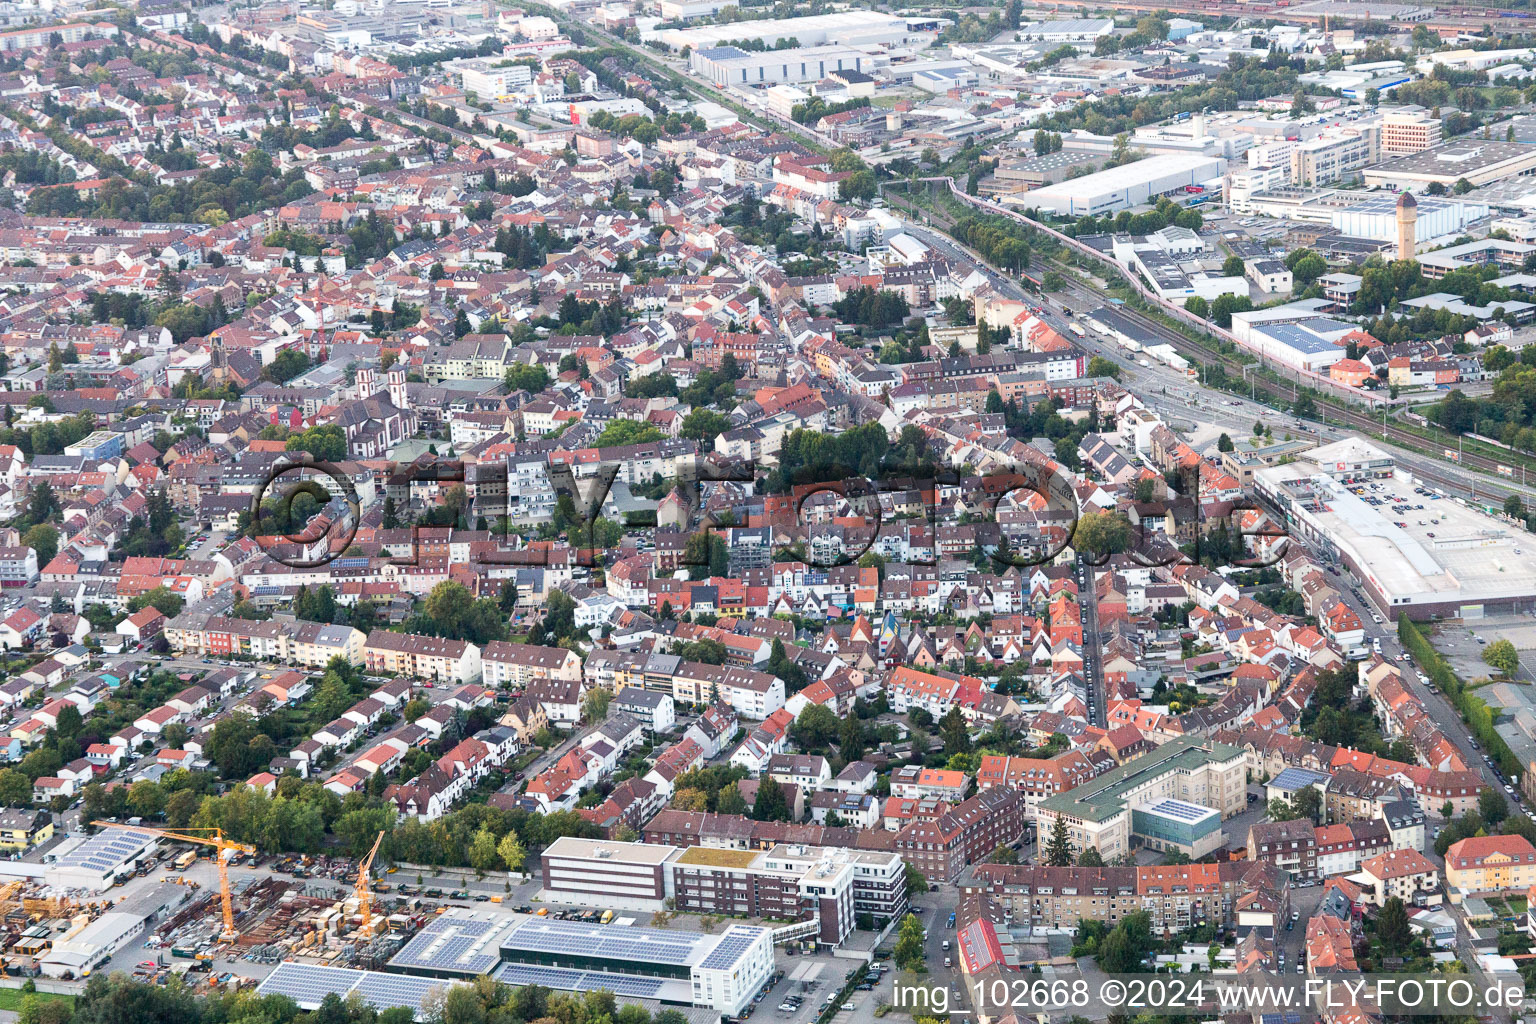 Quartier Neckarau in Mannheim dans le département Bade-Wurtemberg, Allemagne vue d'en haut